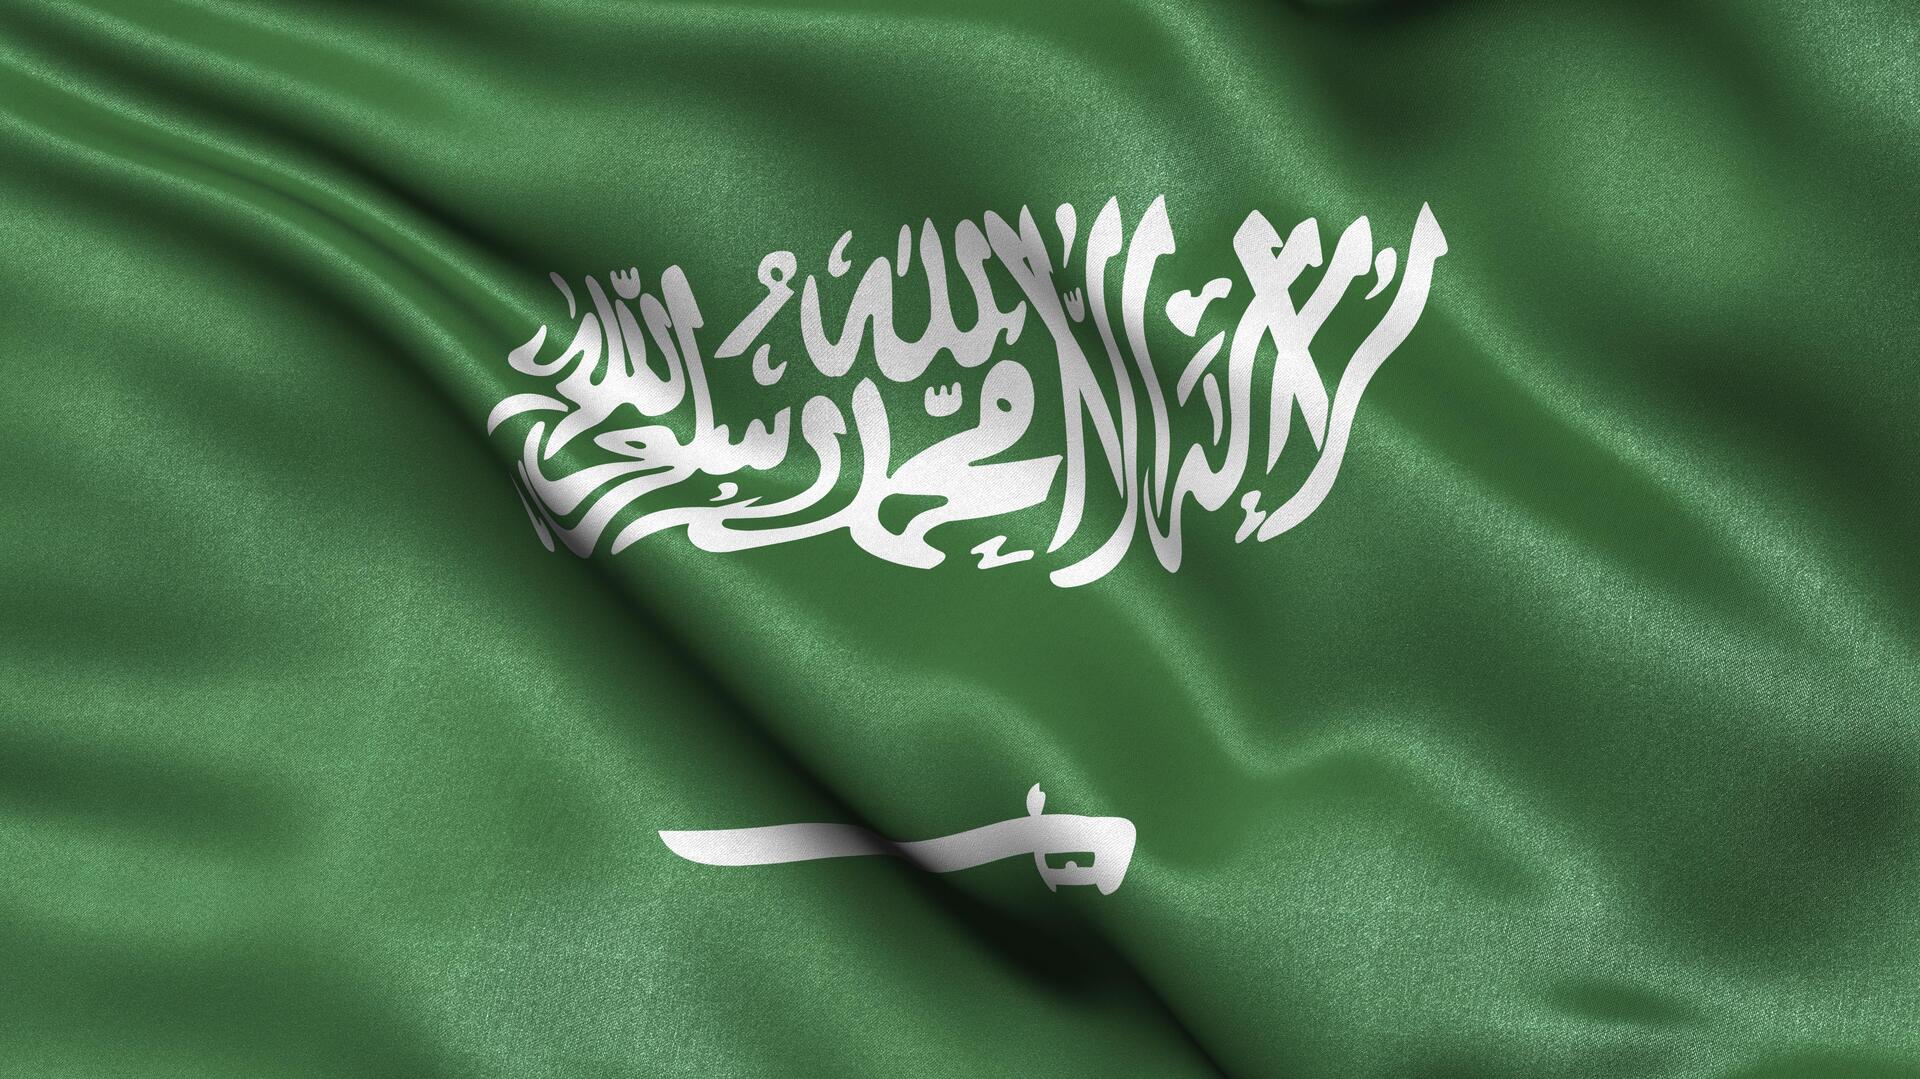 السعودية على موعد مع تجربة فريدة في مجال المواصلات